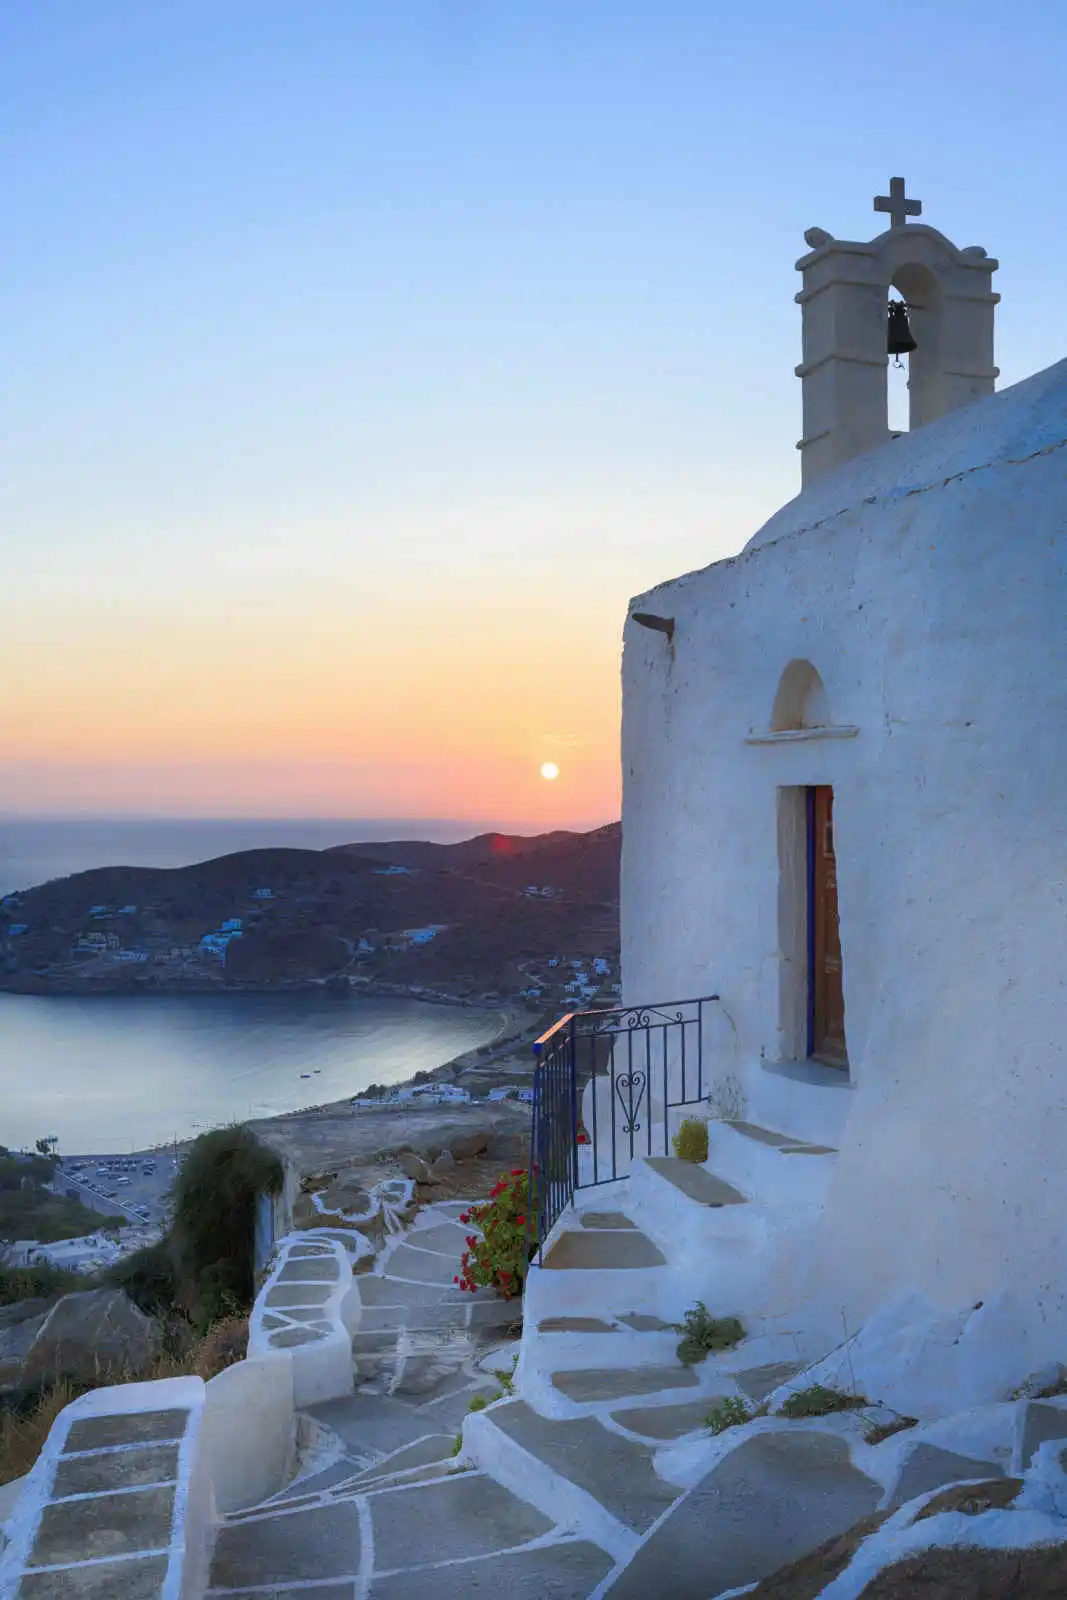 Grèce - Iles grecques - Les Cyclades - Folegandros - Ios - Santorin - Combiné Cyclades : Santorin, Folegandros et Ios